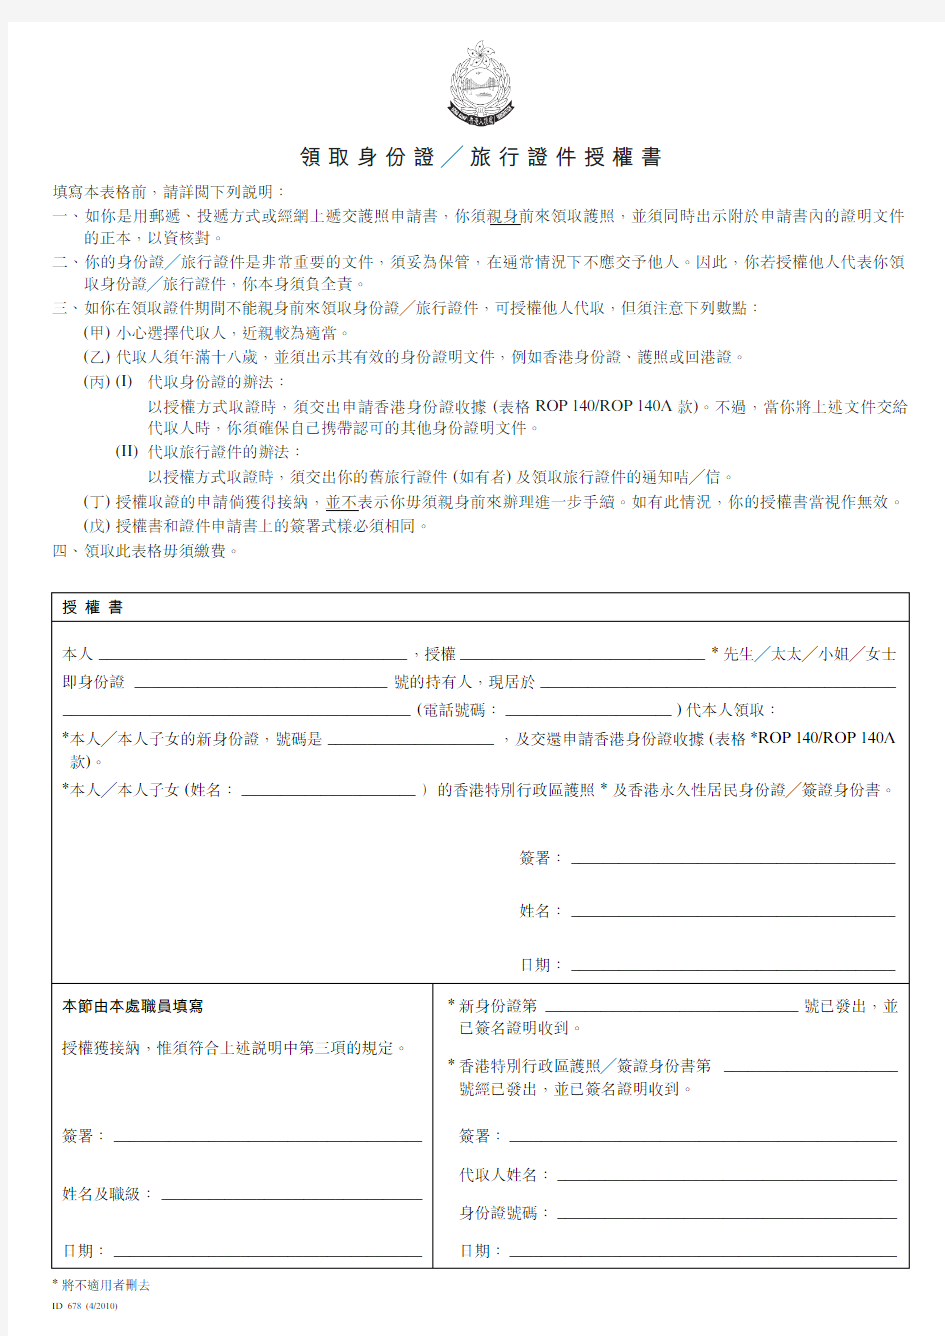 香港居民 身份证 旅行证件 护照 申请表 授权书